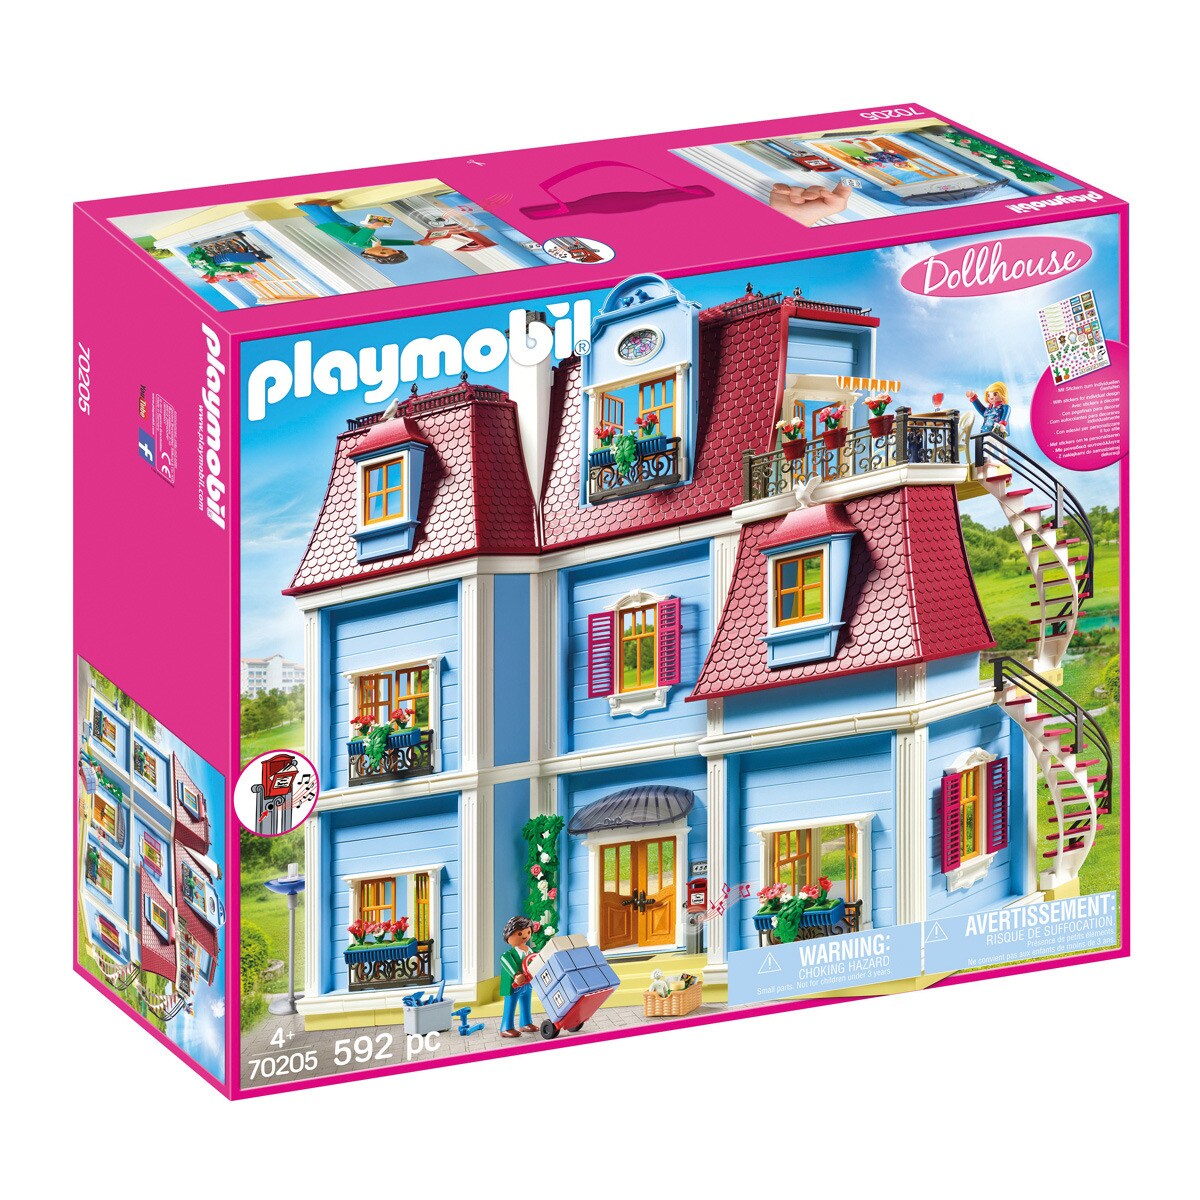 Playmobil - Casa De Muñecas Dollhouse